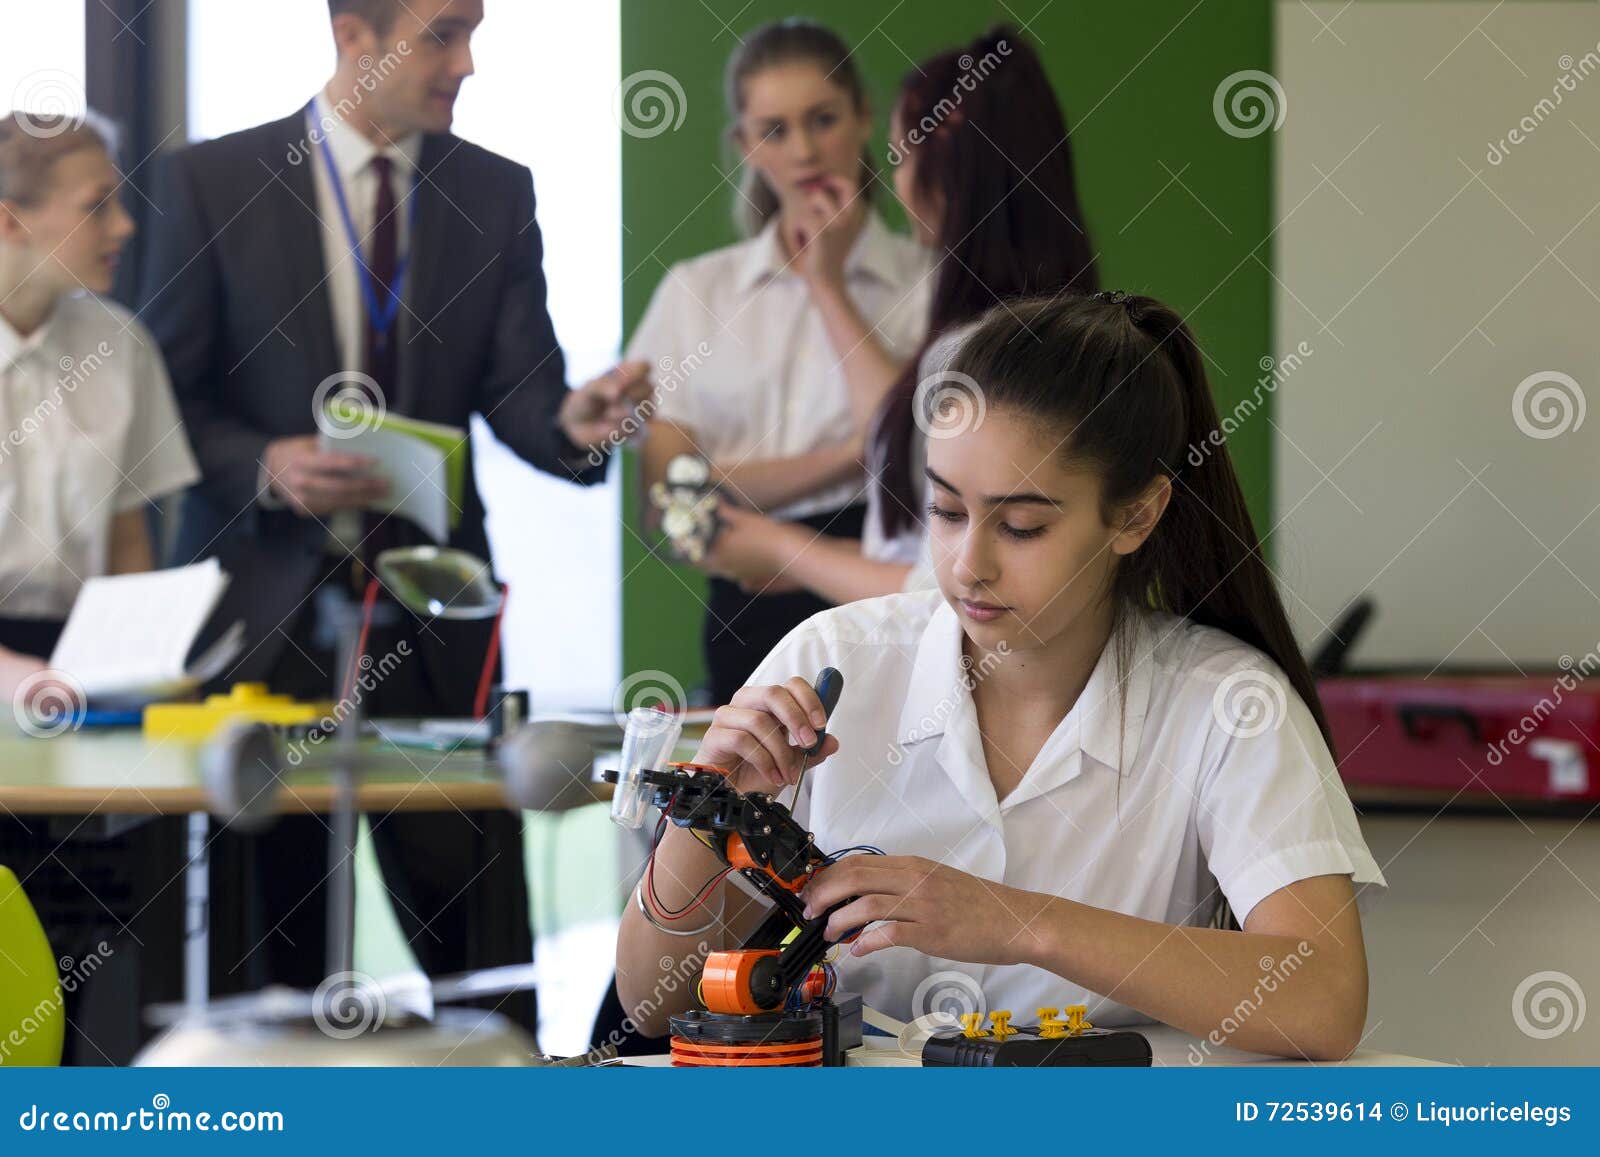 Robotic teknologi i skola. Skola flickan som arbetar på byggande av en robotic arm i hennes skolakurs En grupp av studenter kan ses i bakgrunden som talar till en lärare